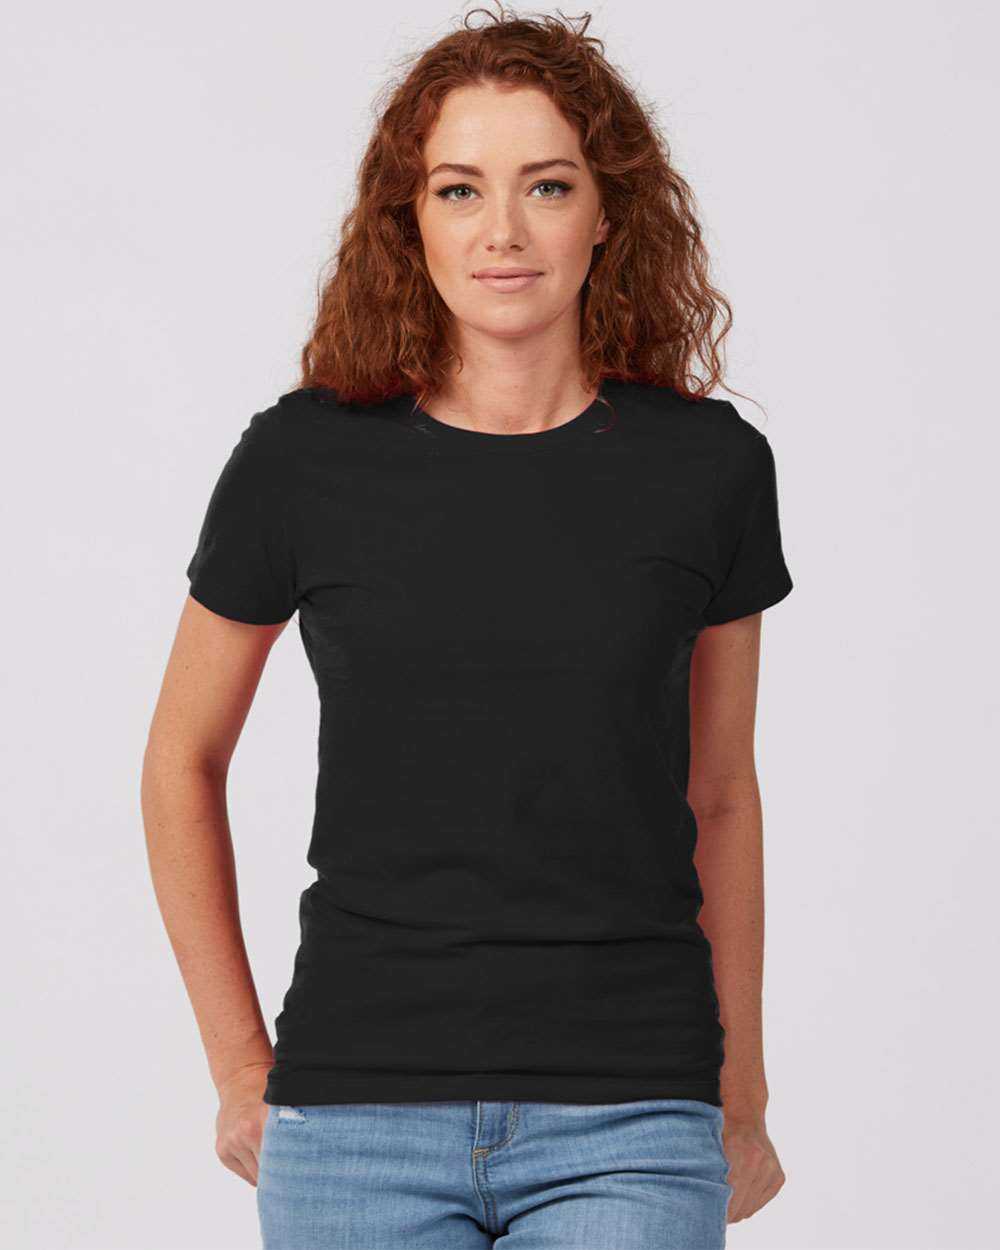 Tultex 516 Women's Premium Cotton T-Shirt - Black - HIT a Double